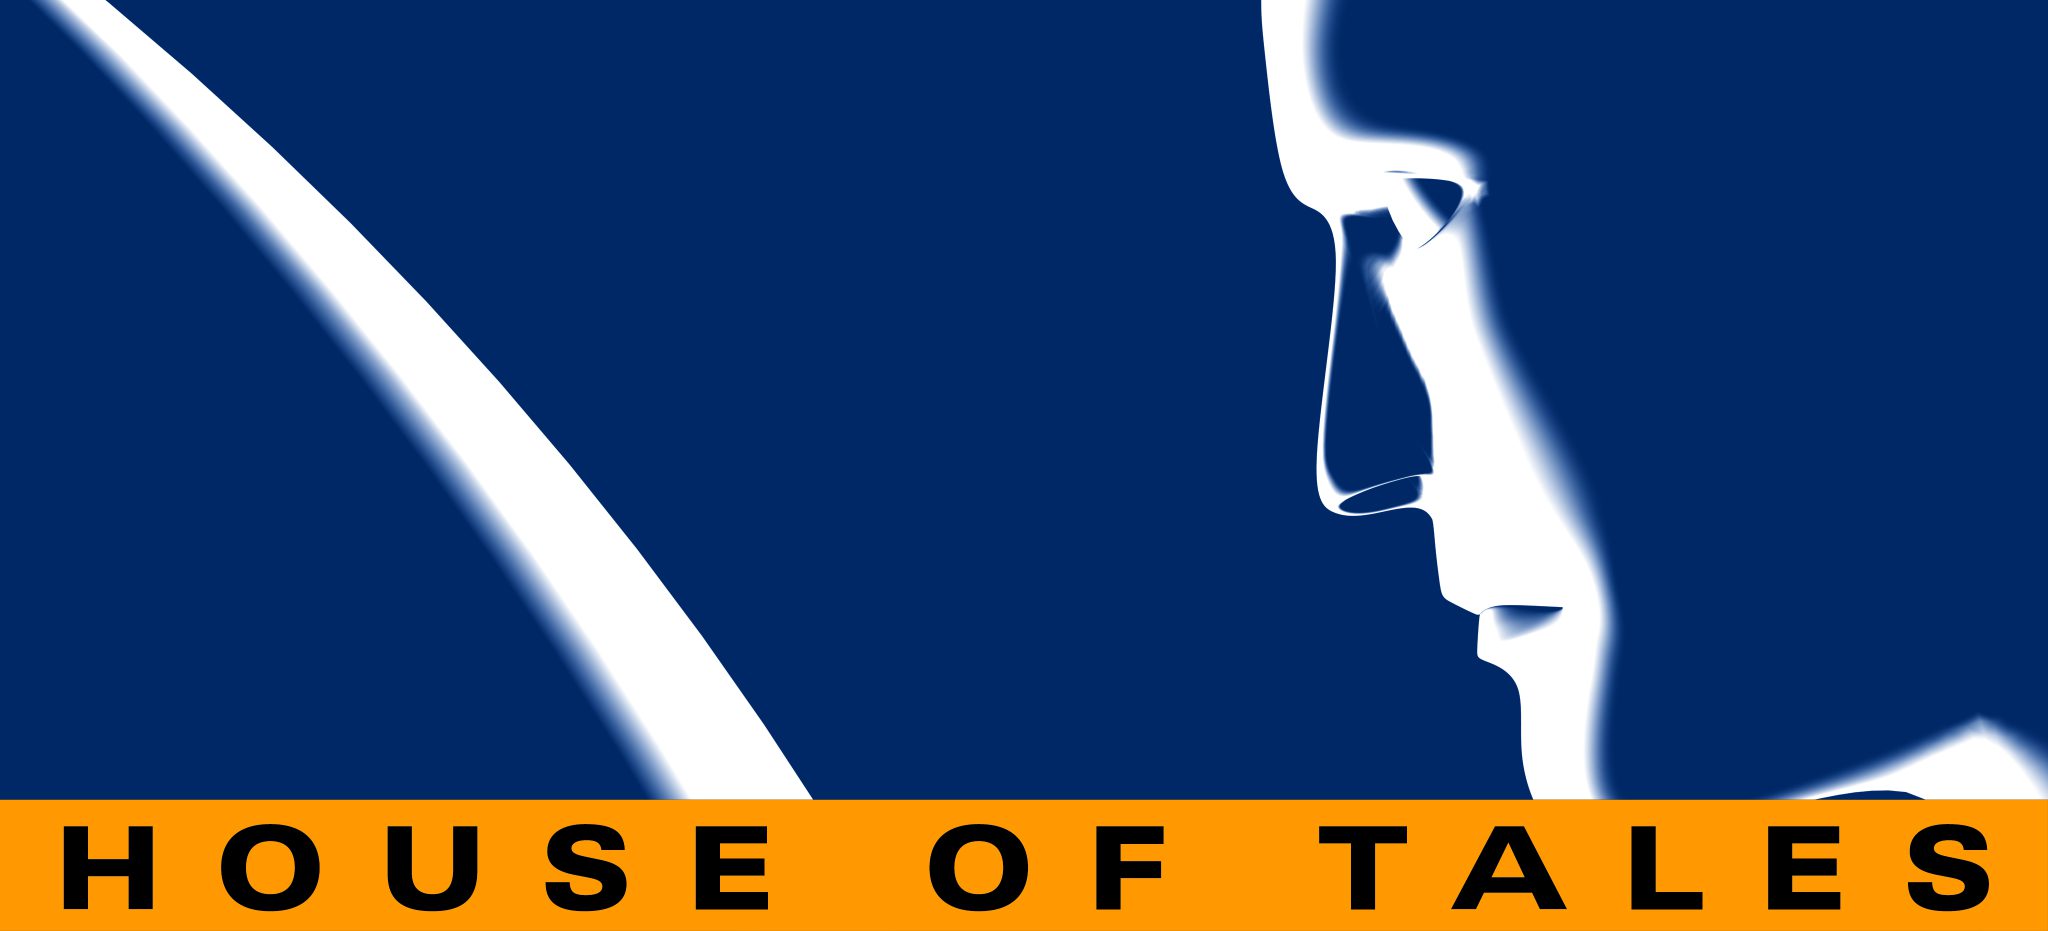 House of Tales: En översikt över företaget